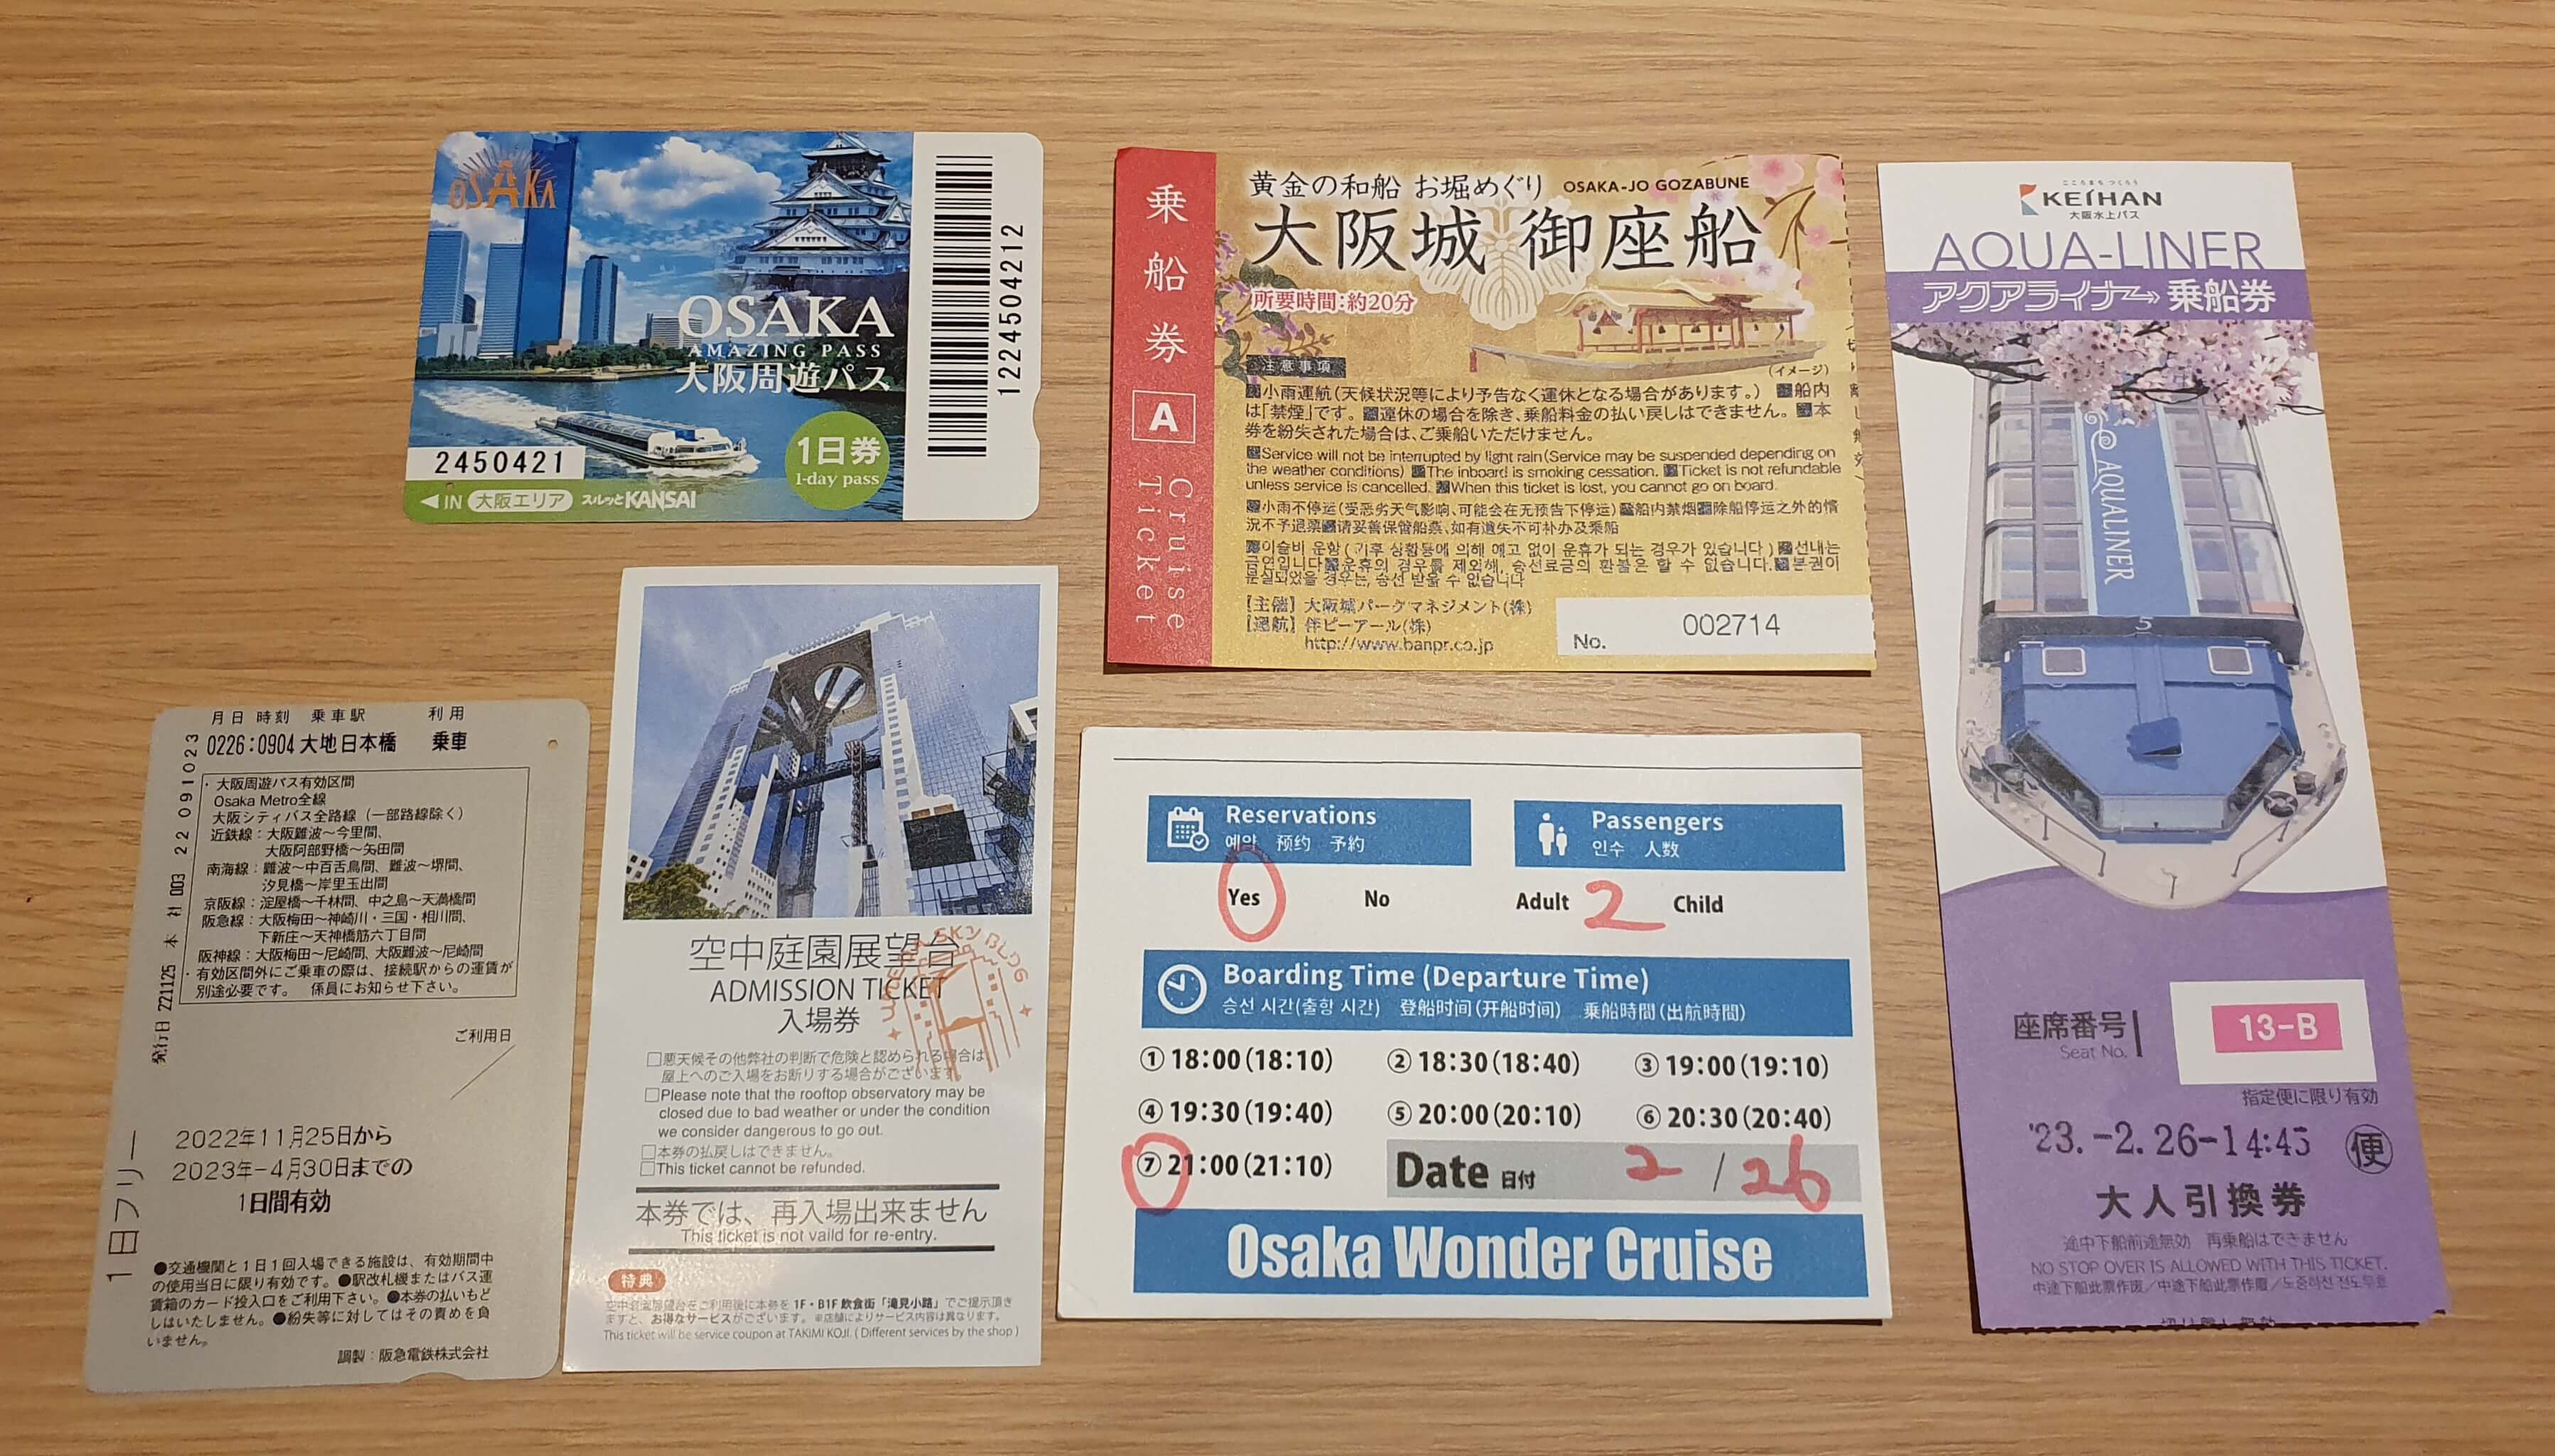 오사카 주유패스 1일권 사용 티켓